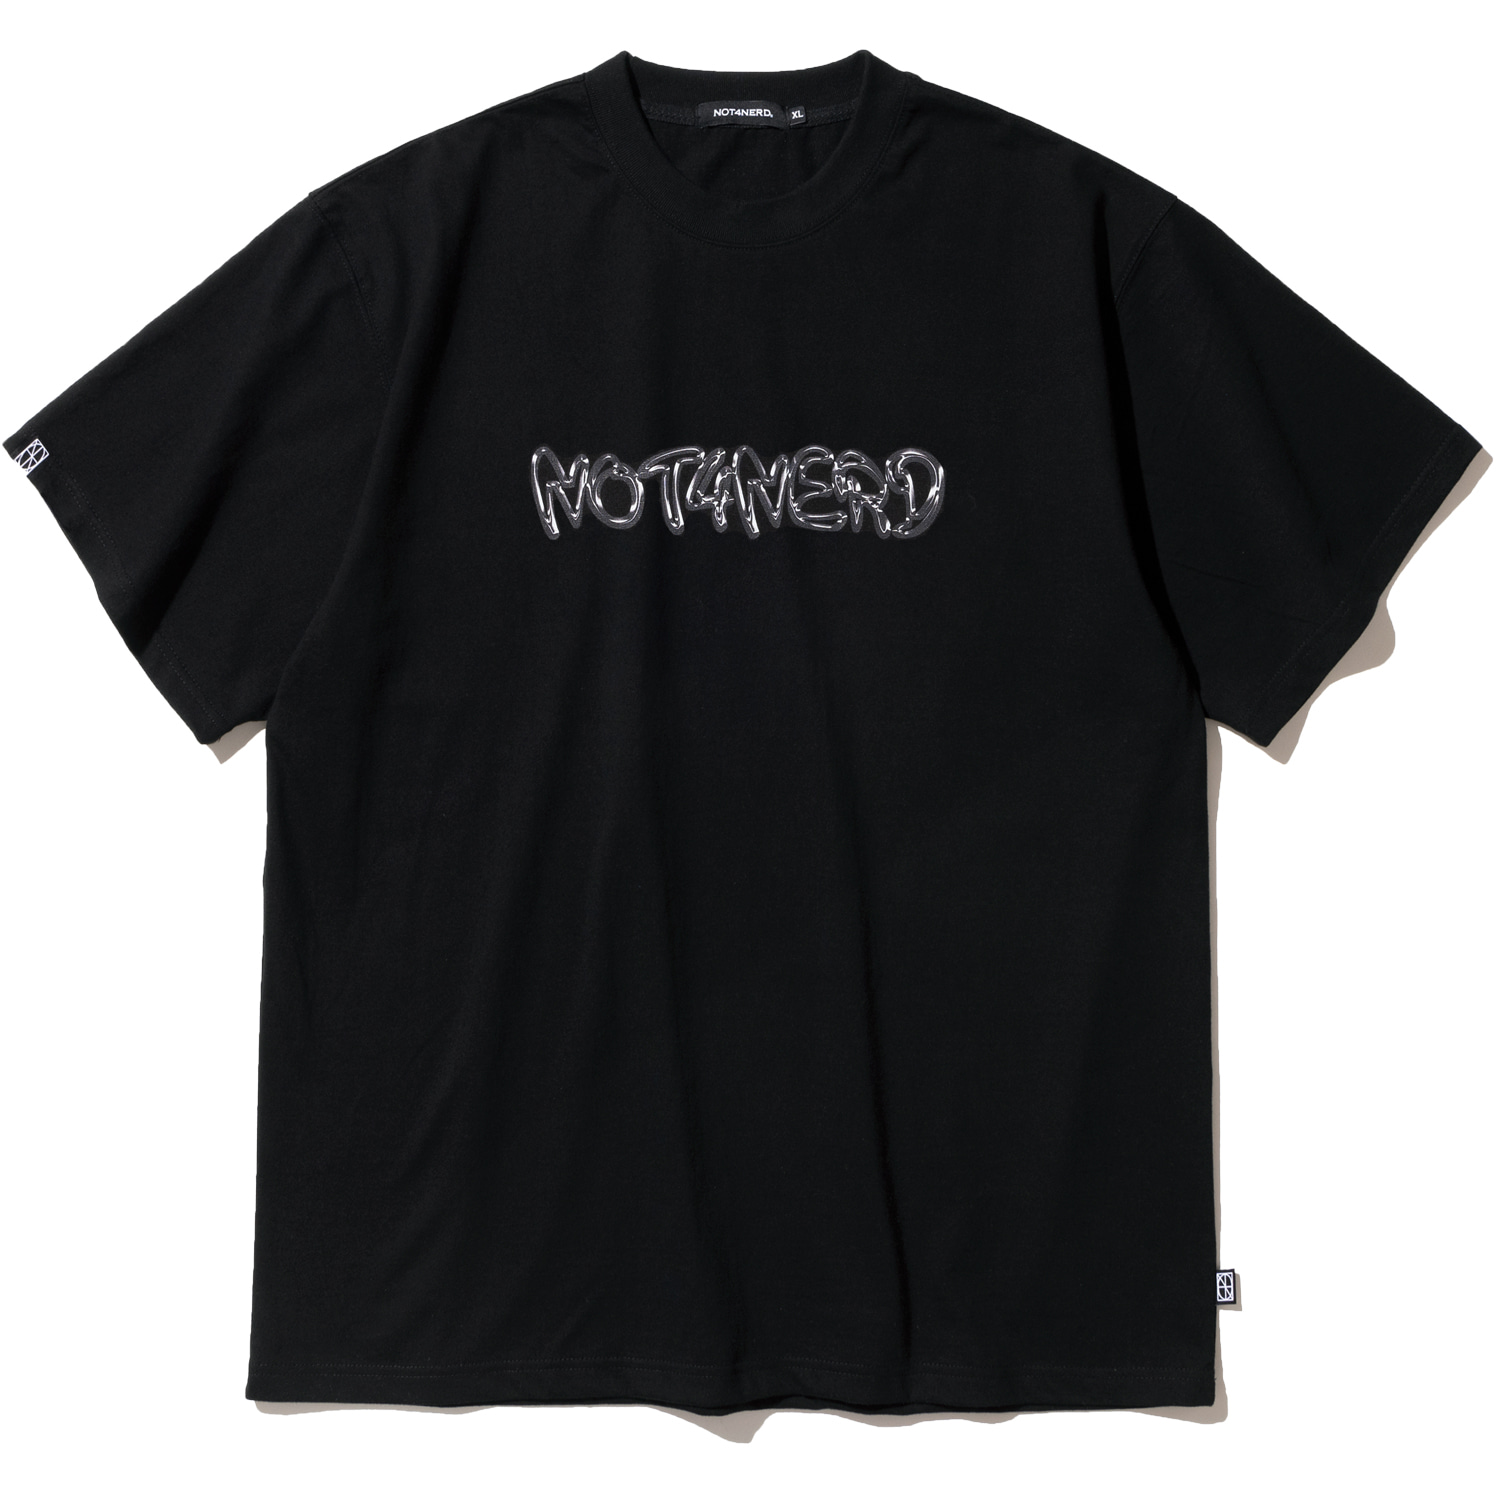 Metal Logo T-Shirts - Black,NOT4NERD